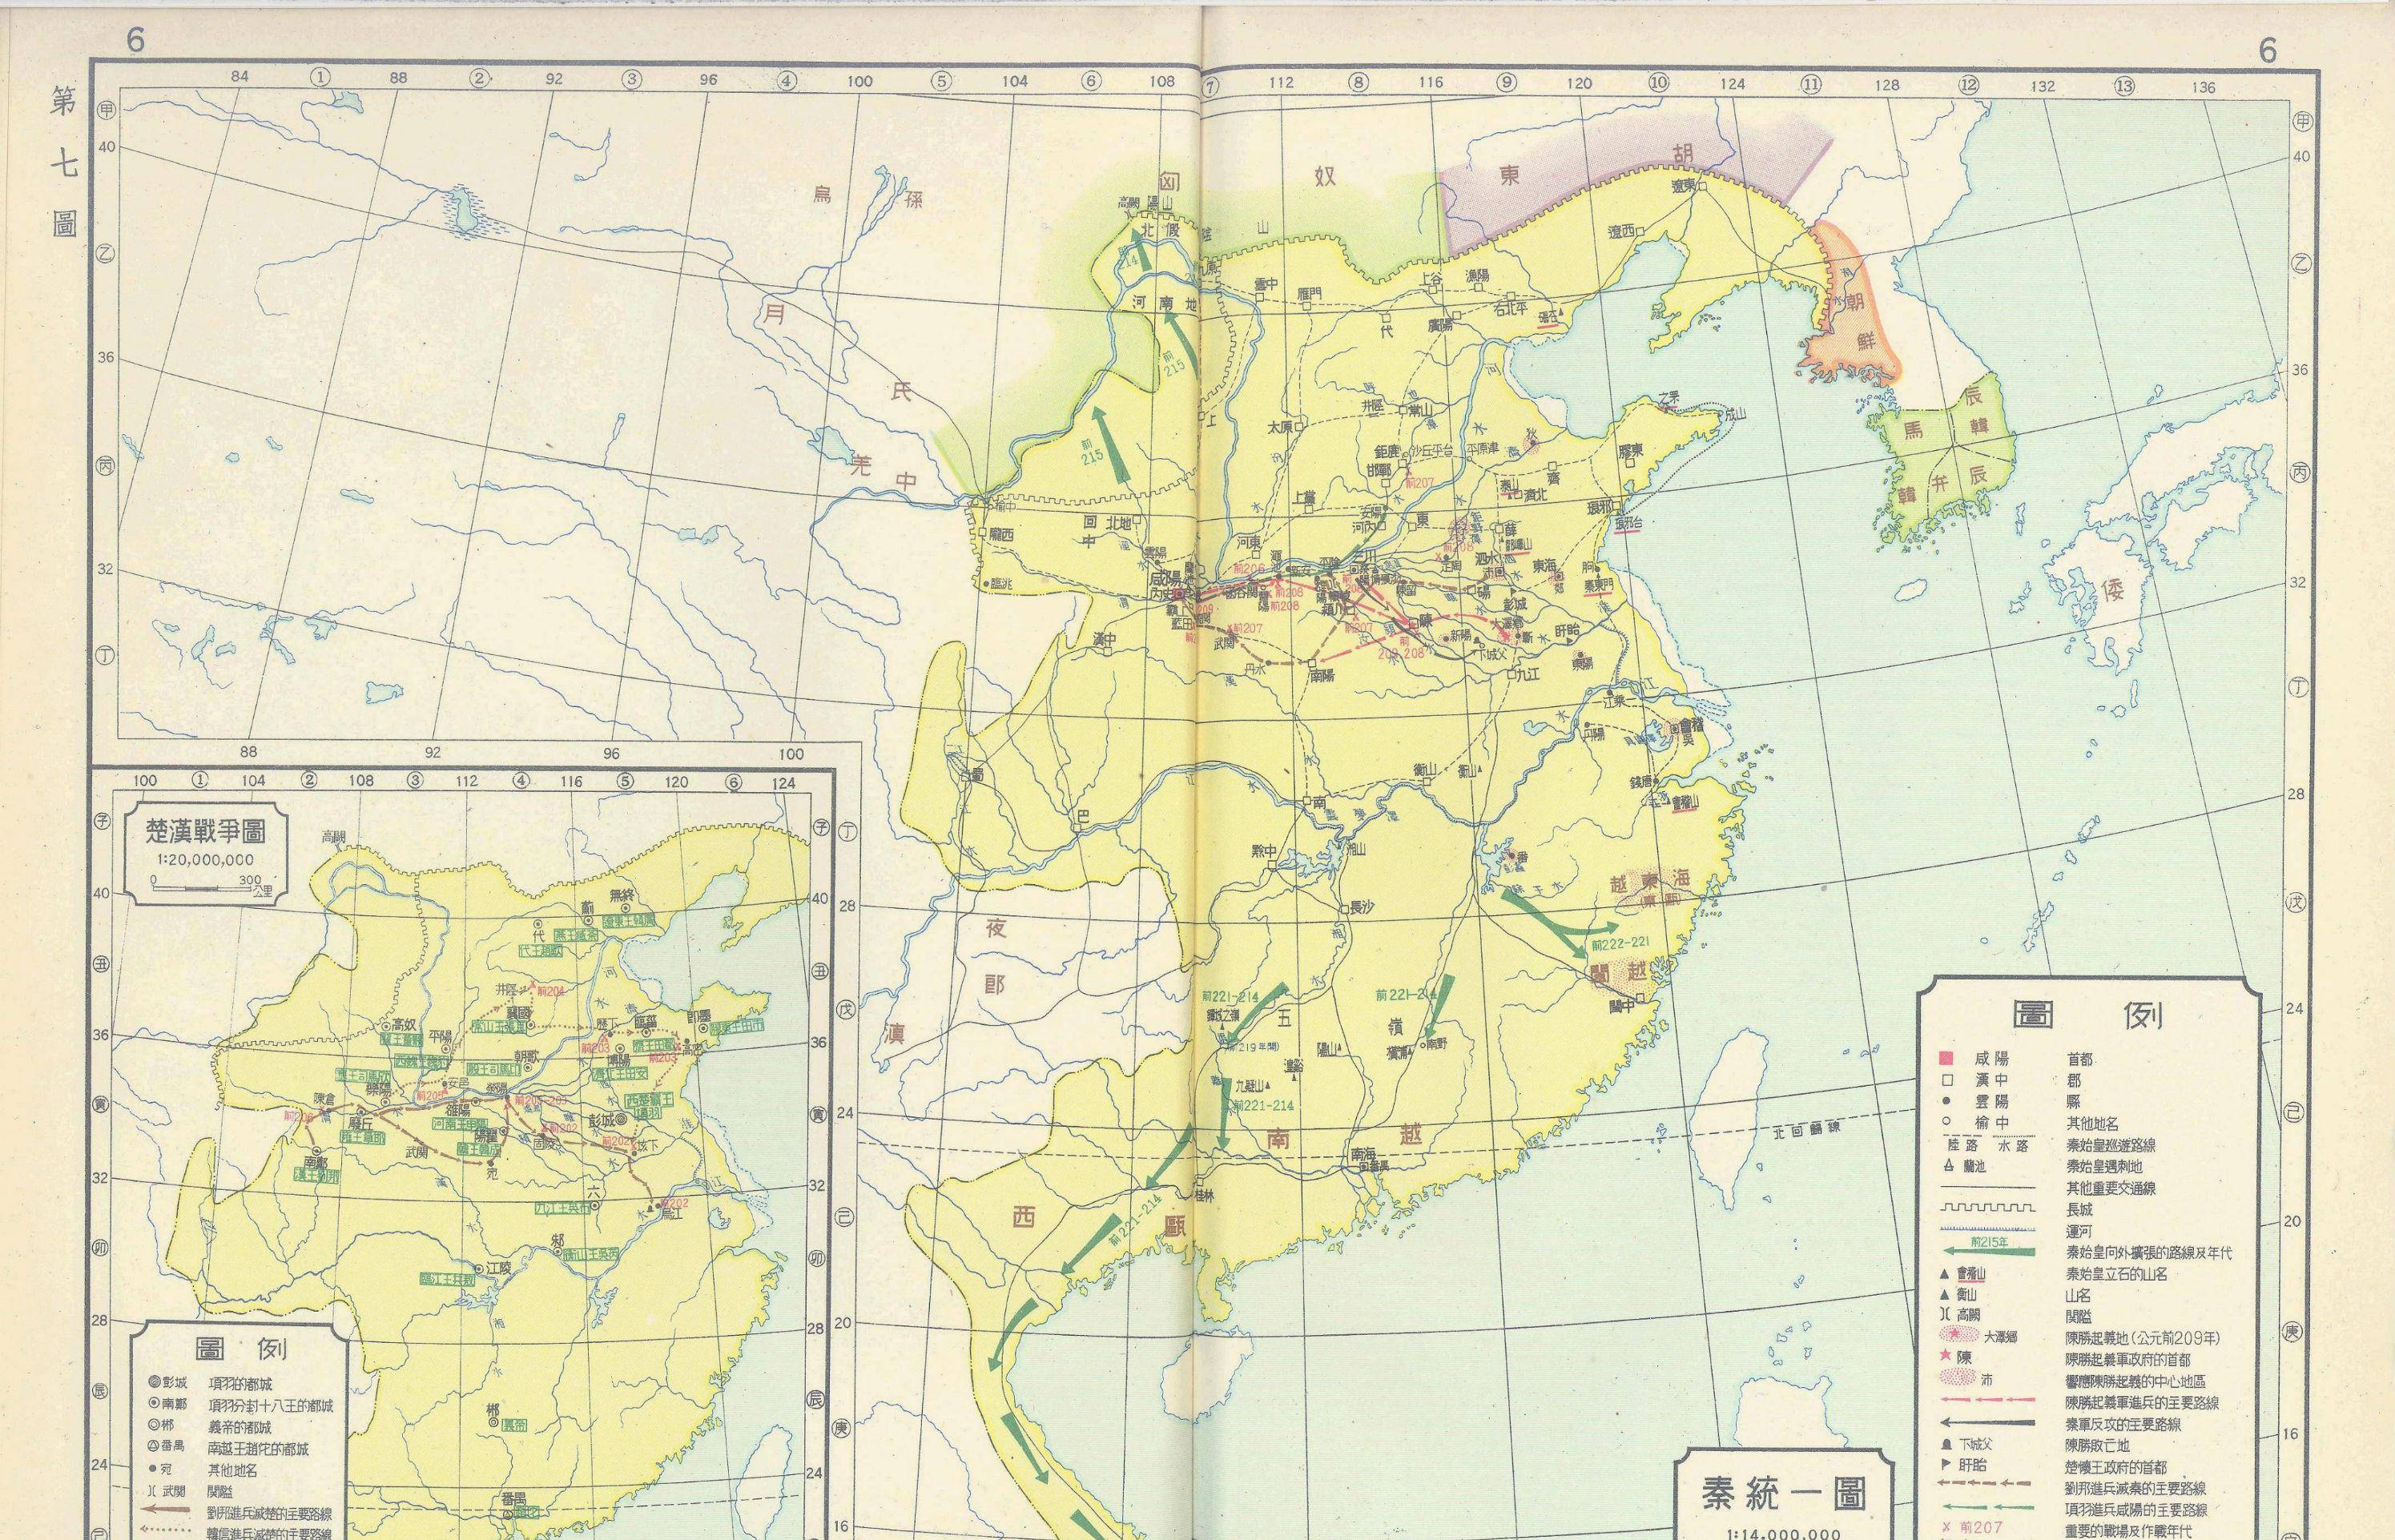 秦朝36郡地图图片